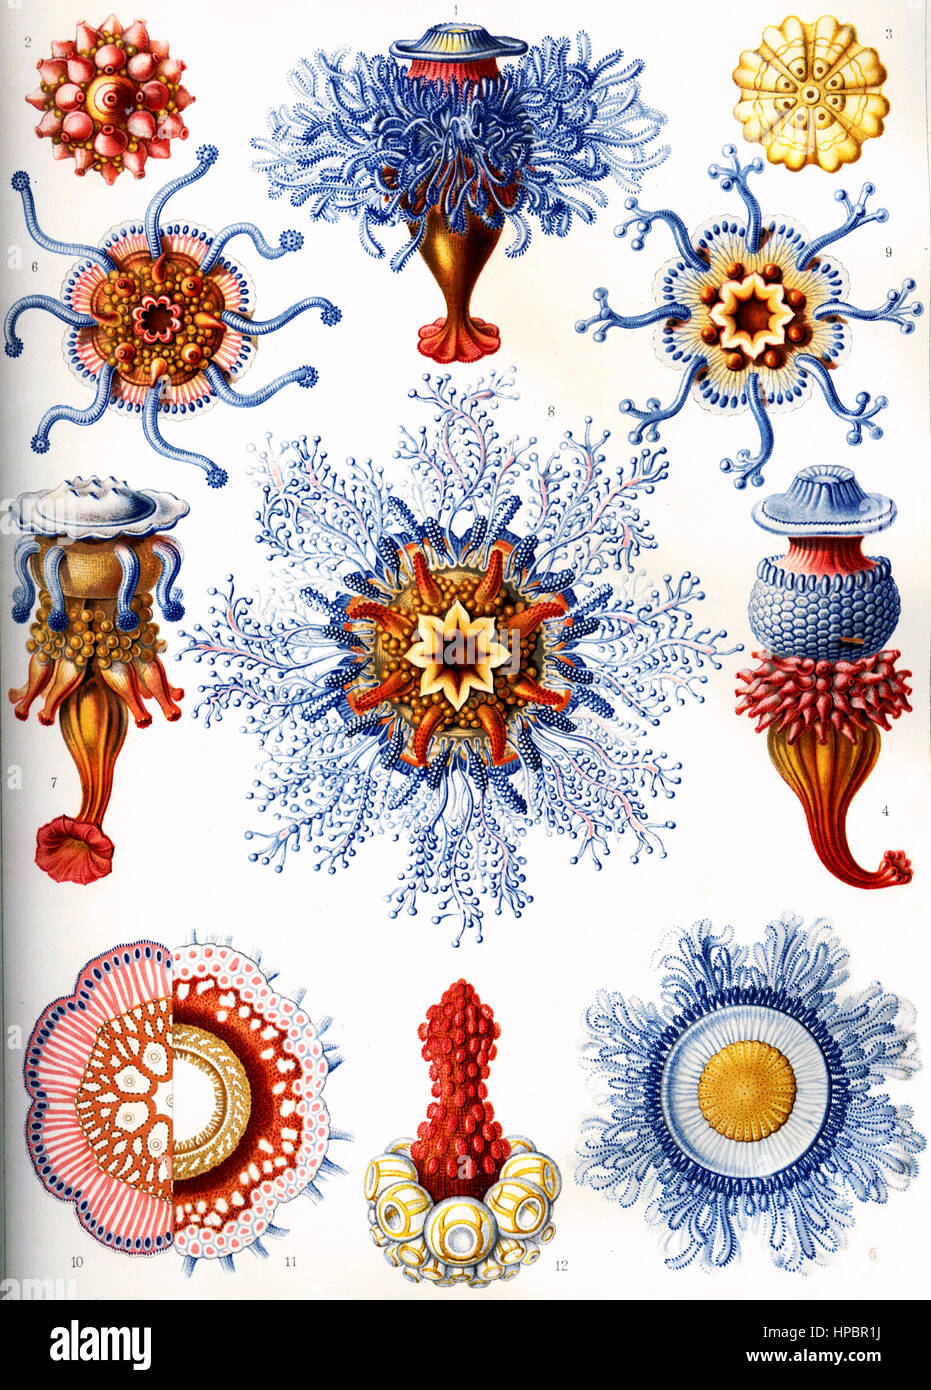 Siphonophorae par Ernst Haeckel ; Kunstformen der Natur, 1900 Banque D'Images